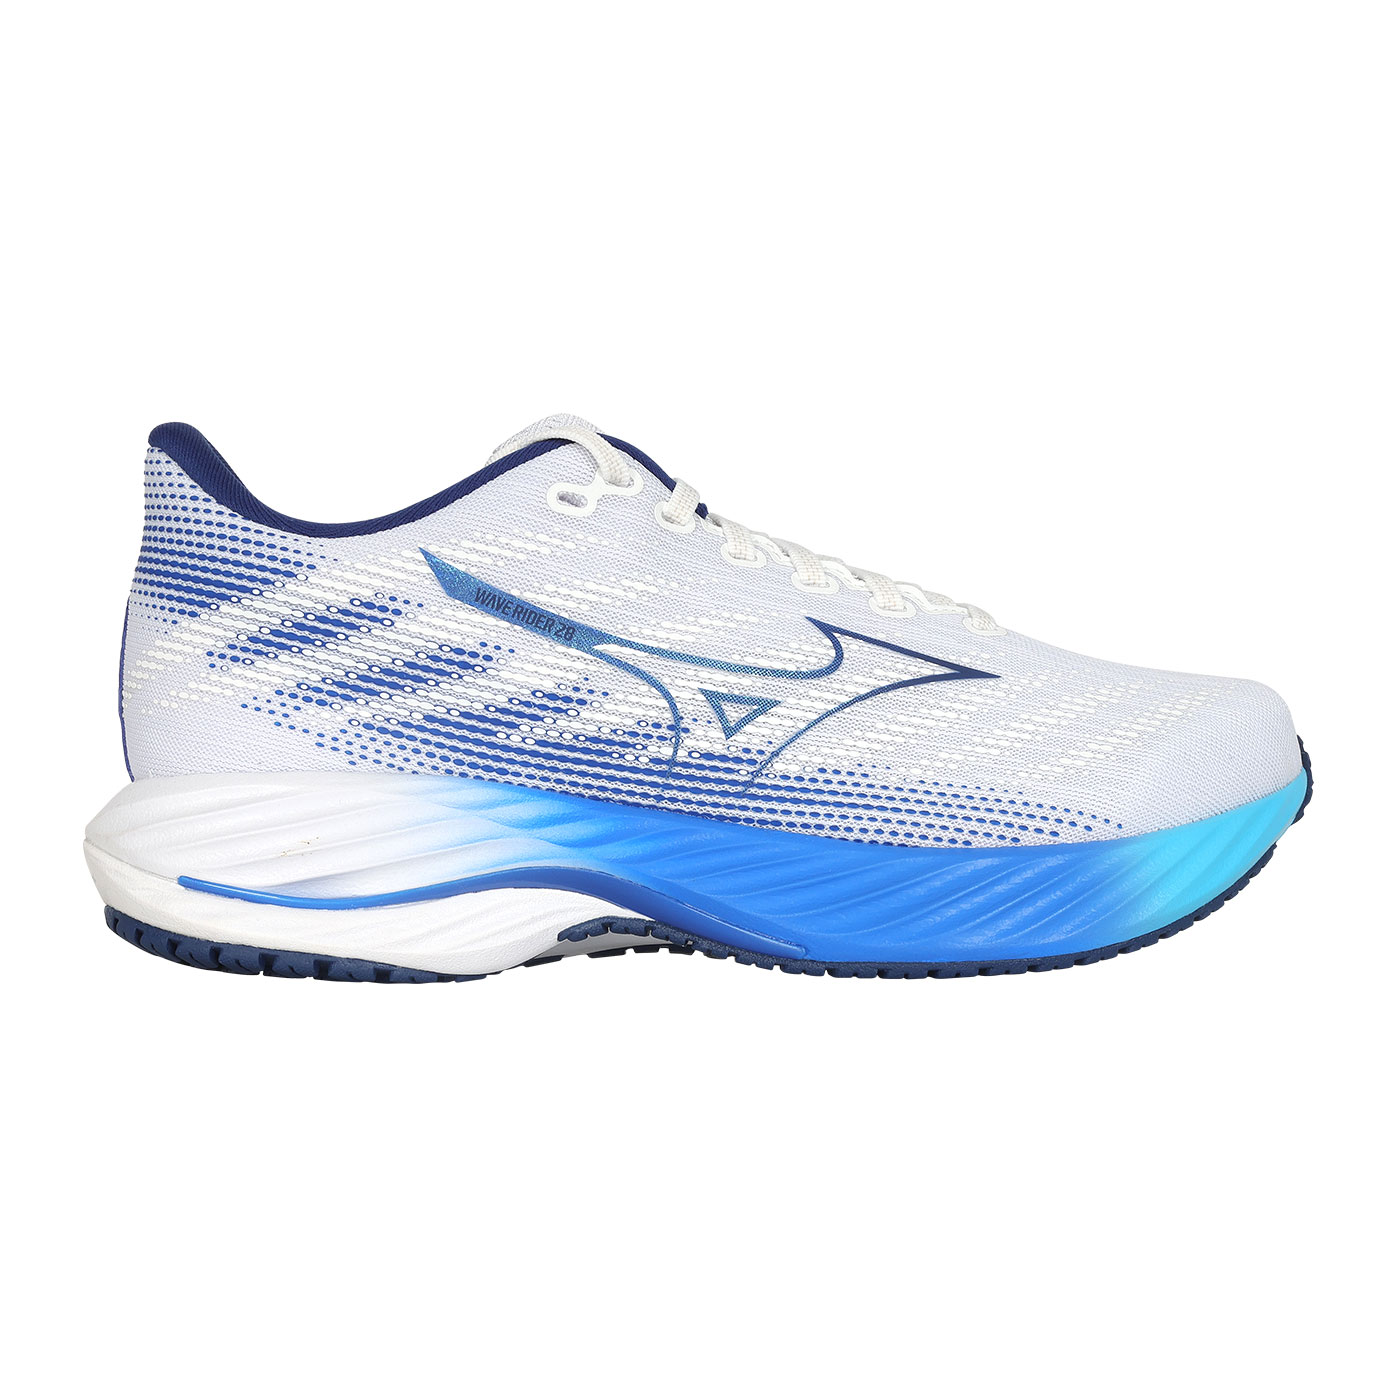 MIZUNO 男款慢跑鞋-4E  @WAVE RIDER 28 SW@ J1GC240401 - 白藍